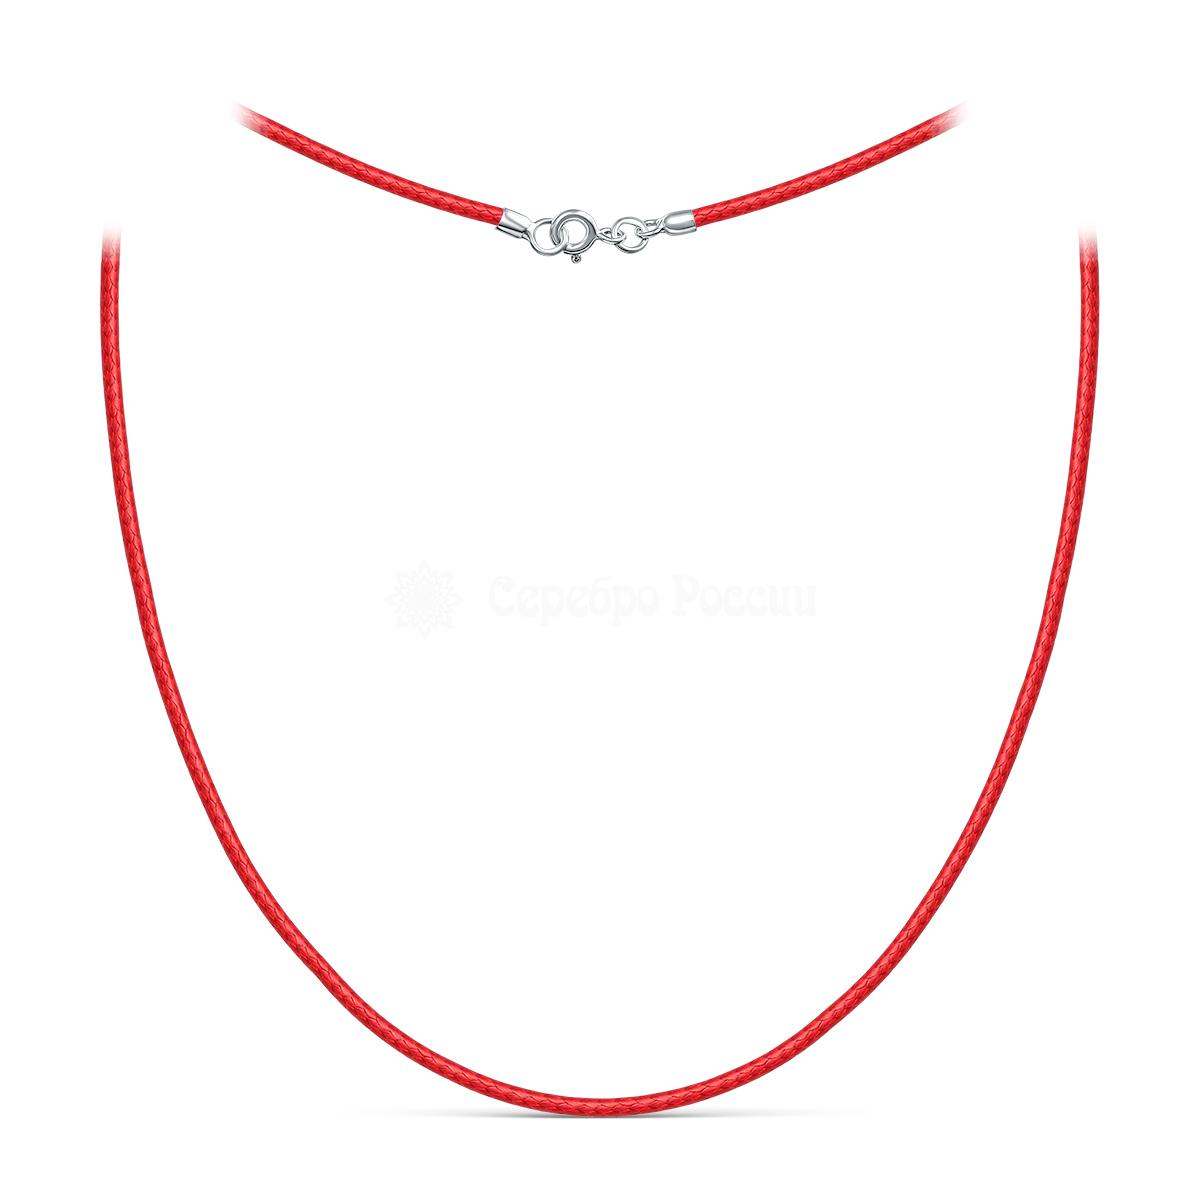 Шнурок текстильный (вощёный) красный с замком из родированного серебра хш-003р-01красный хш-003р-01красный